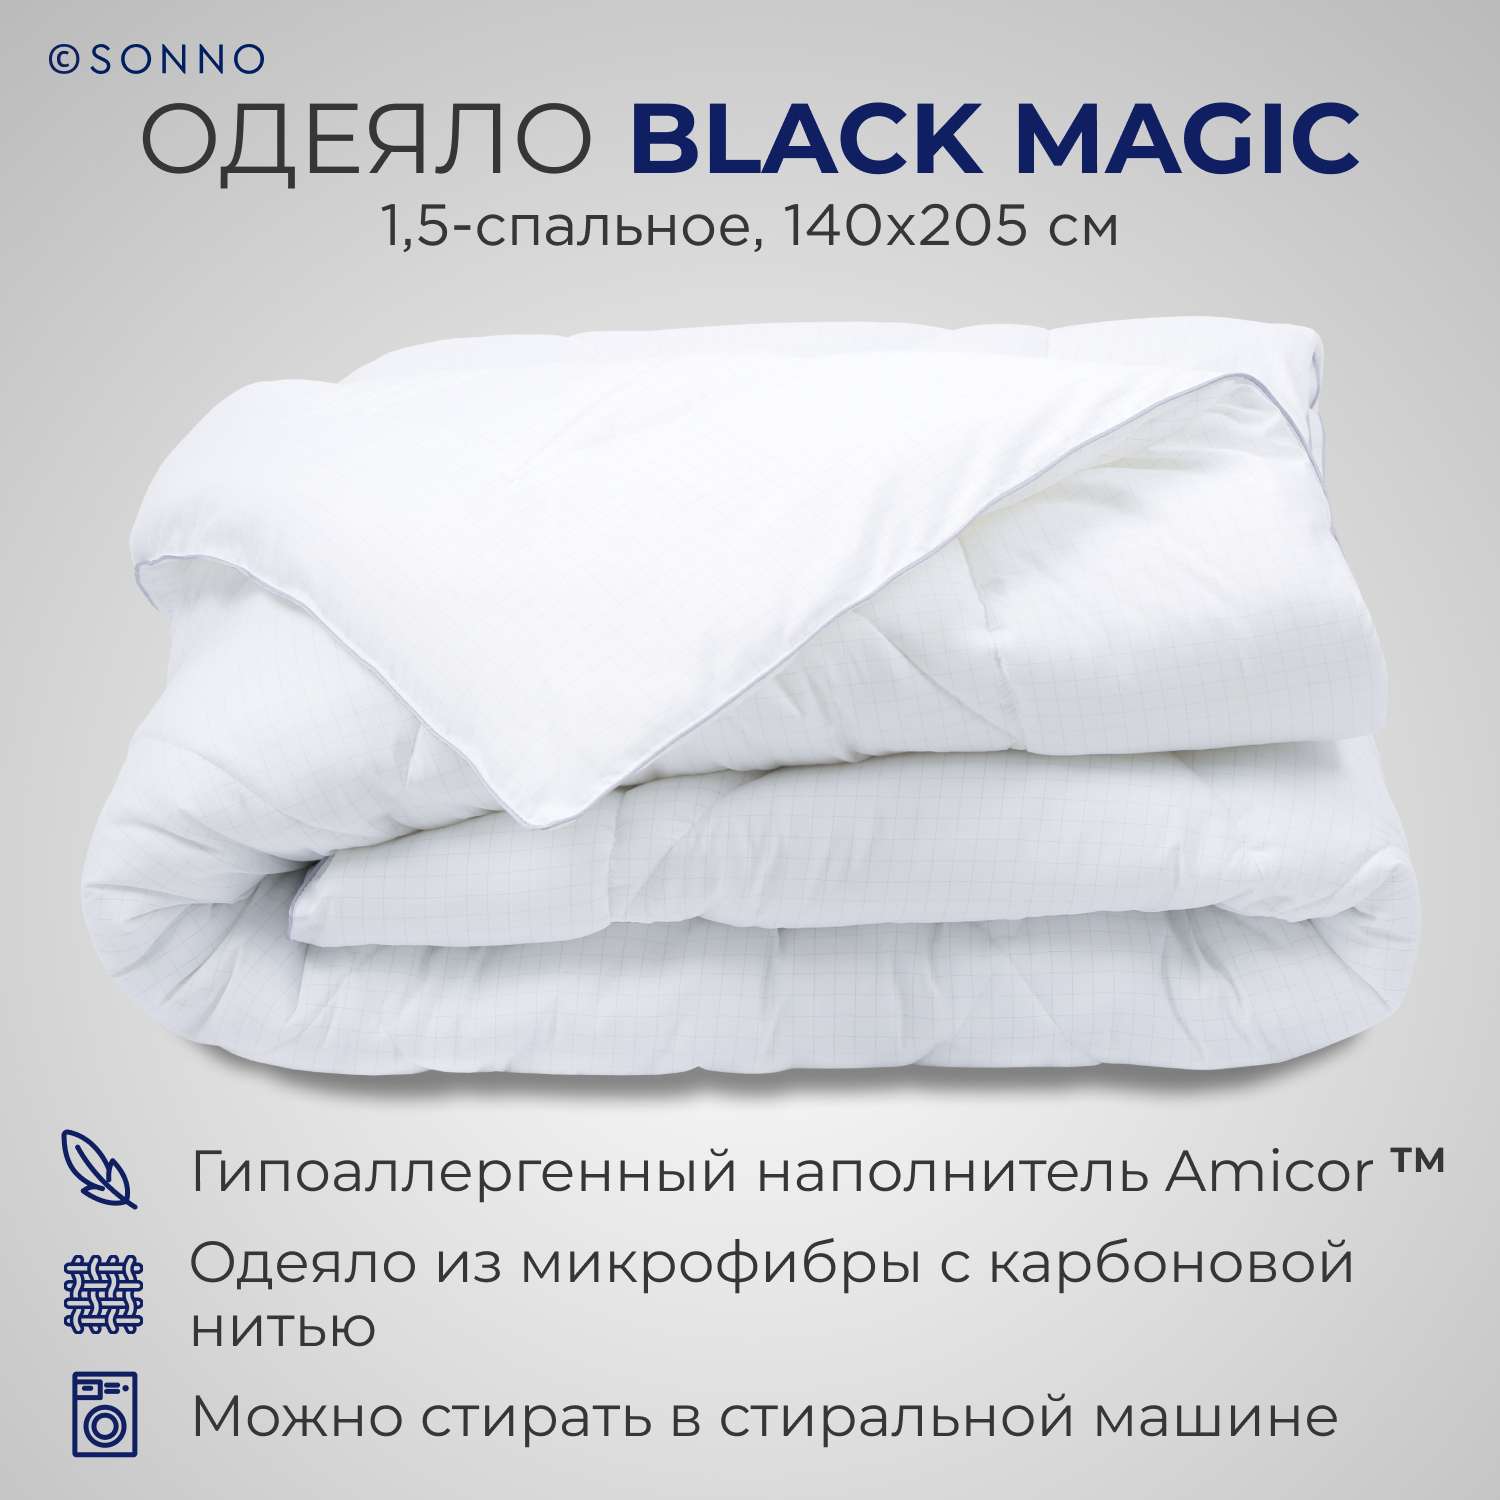 Одеяло SONNO BLACK MAGIC 1.5 спальный 140x205 наполнитель Amicor ТМ - фото 1